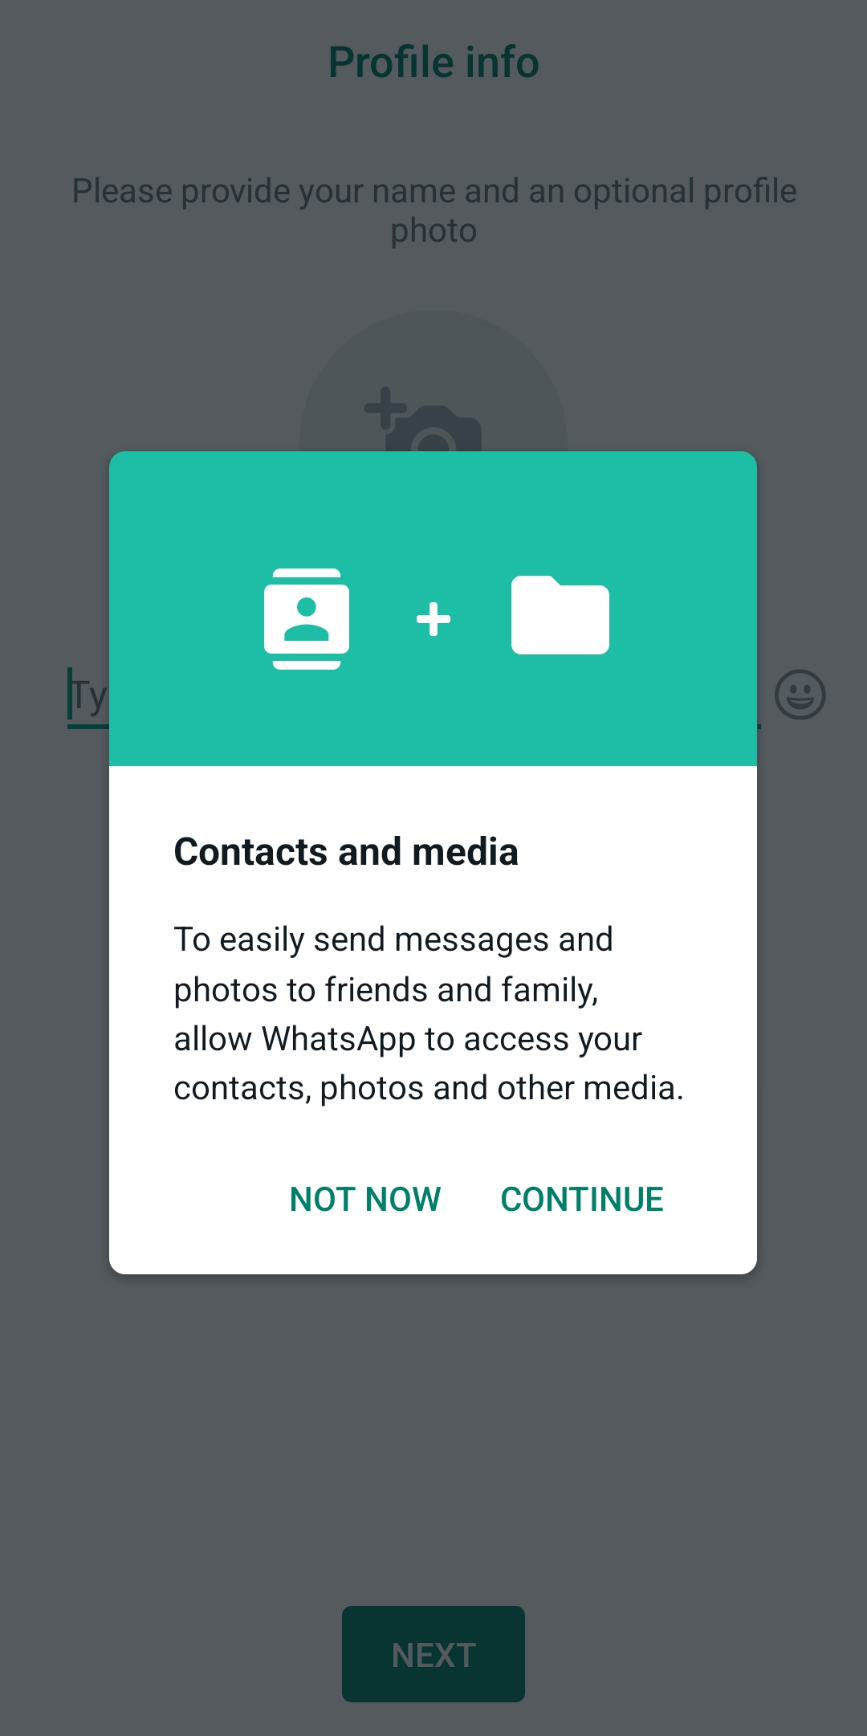 Ventana emergente de WhatsApp solicitando acceso a tus contactos y multimedia